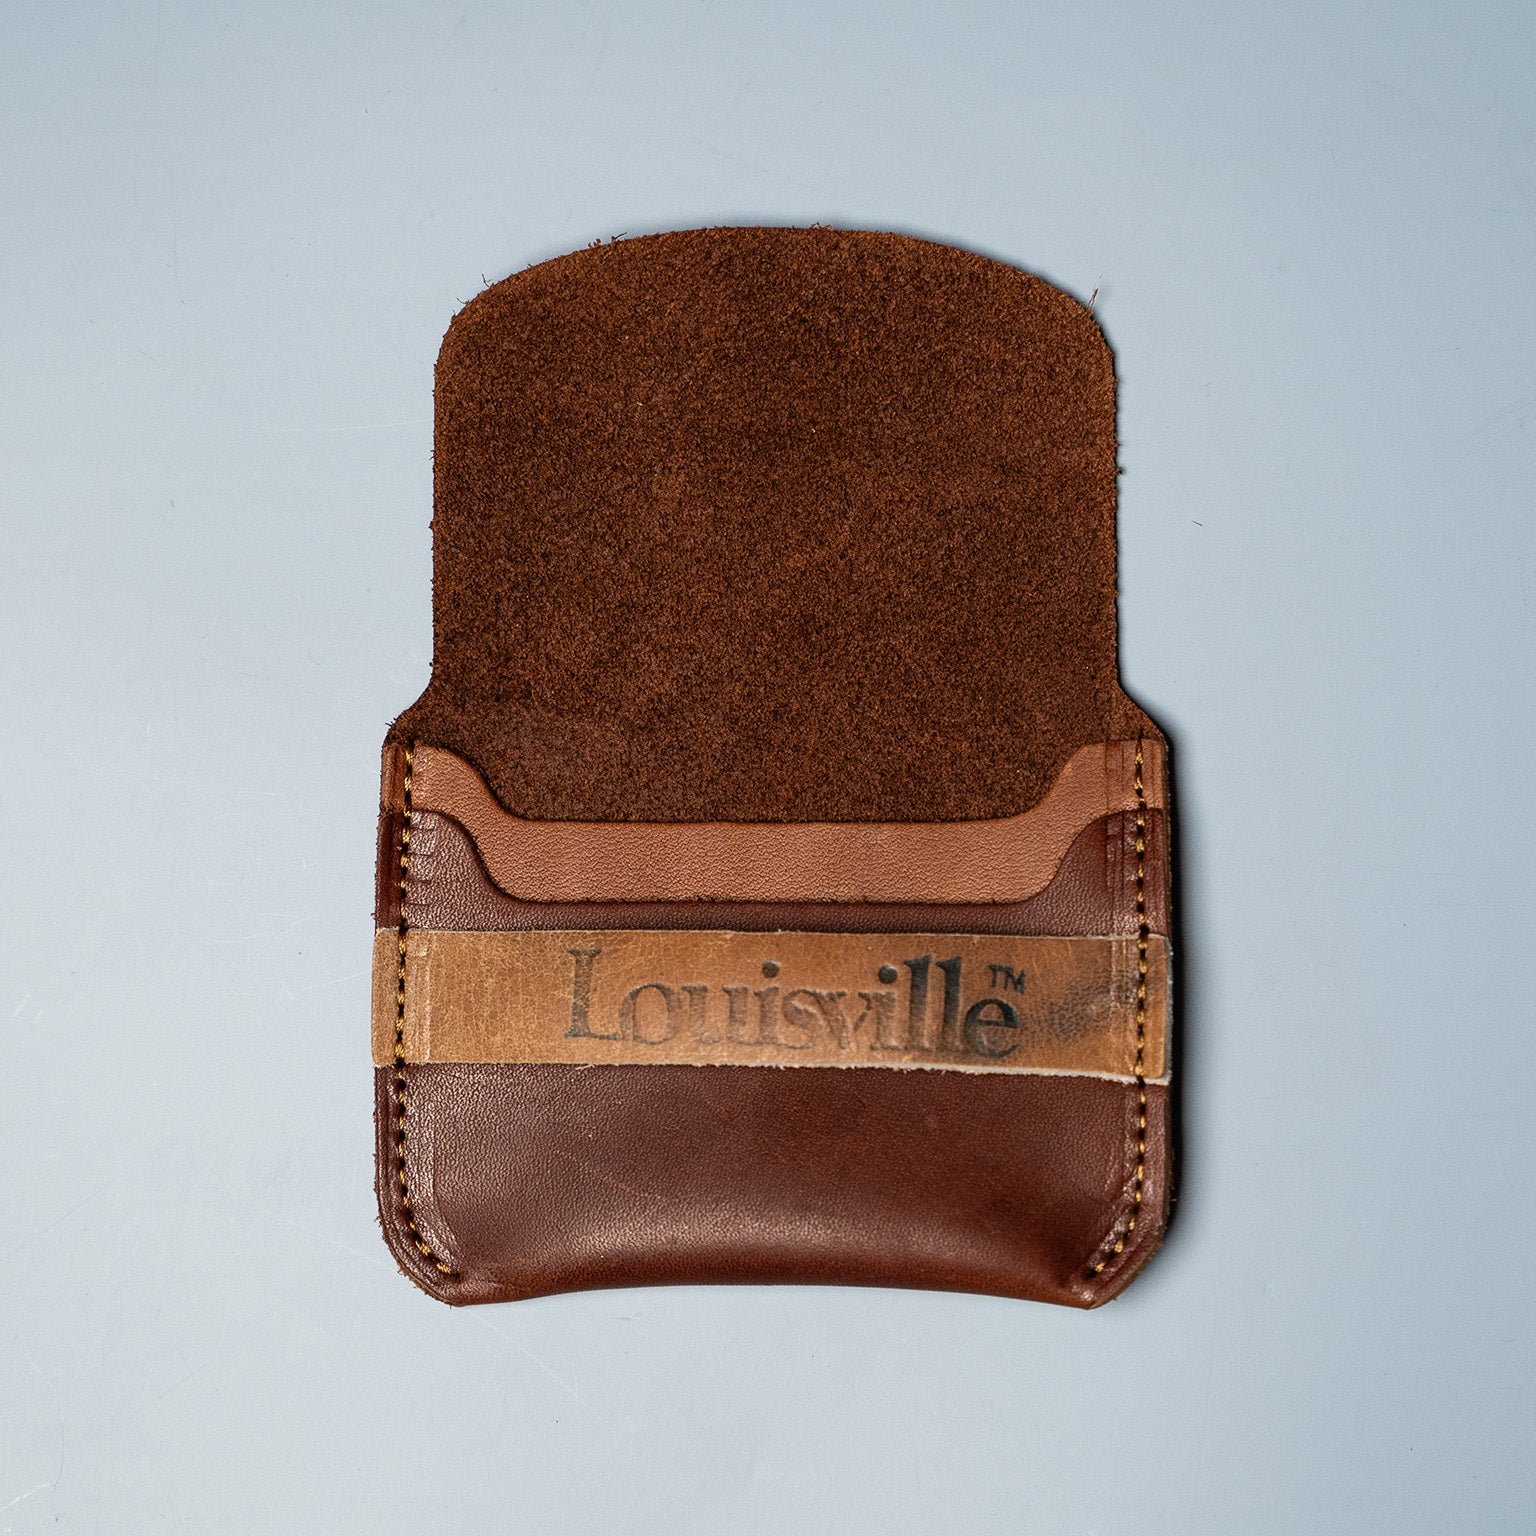 Men's Leather Wallets for sale in Louisville, Kentucky